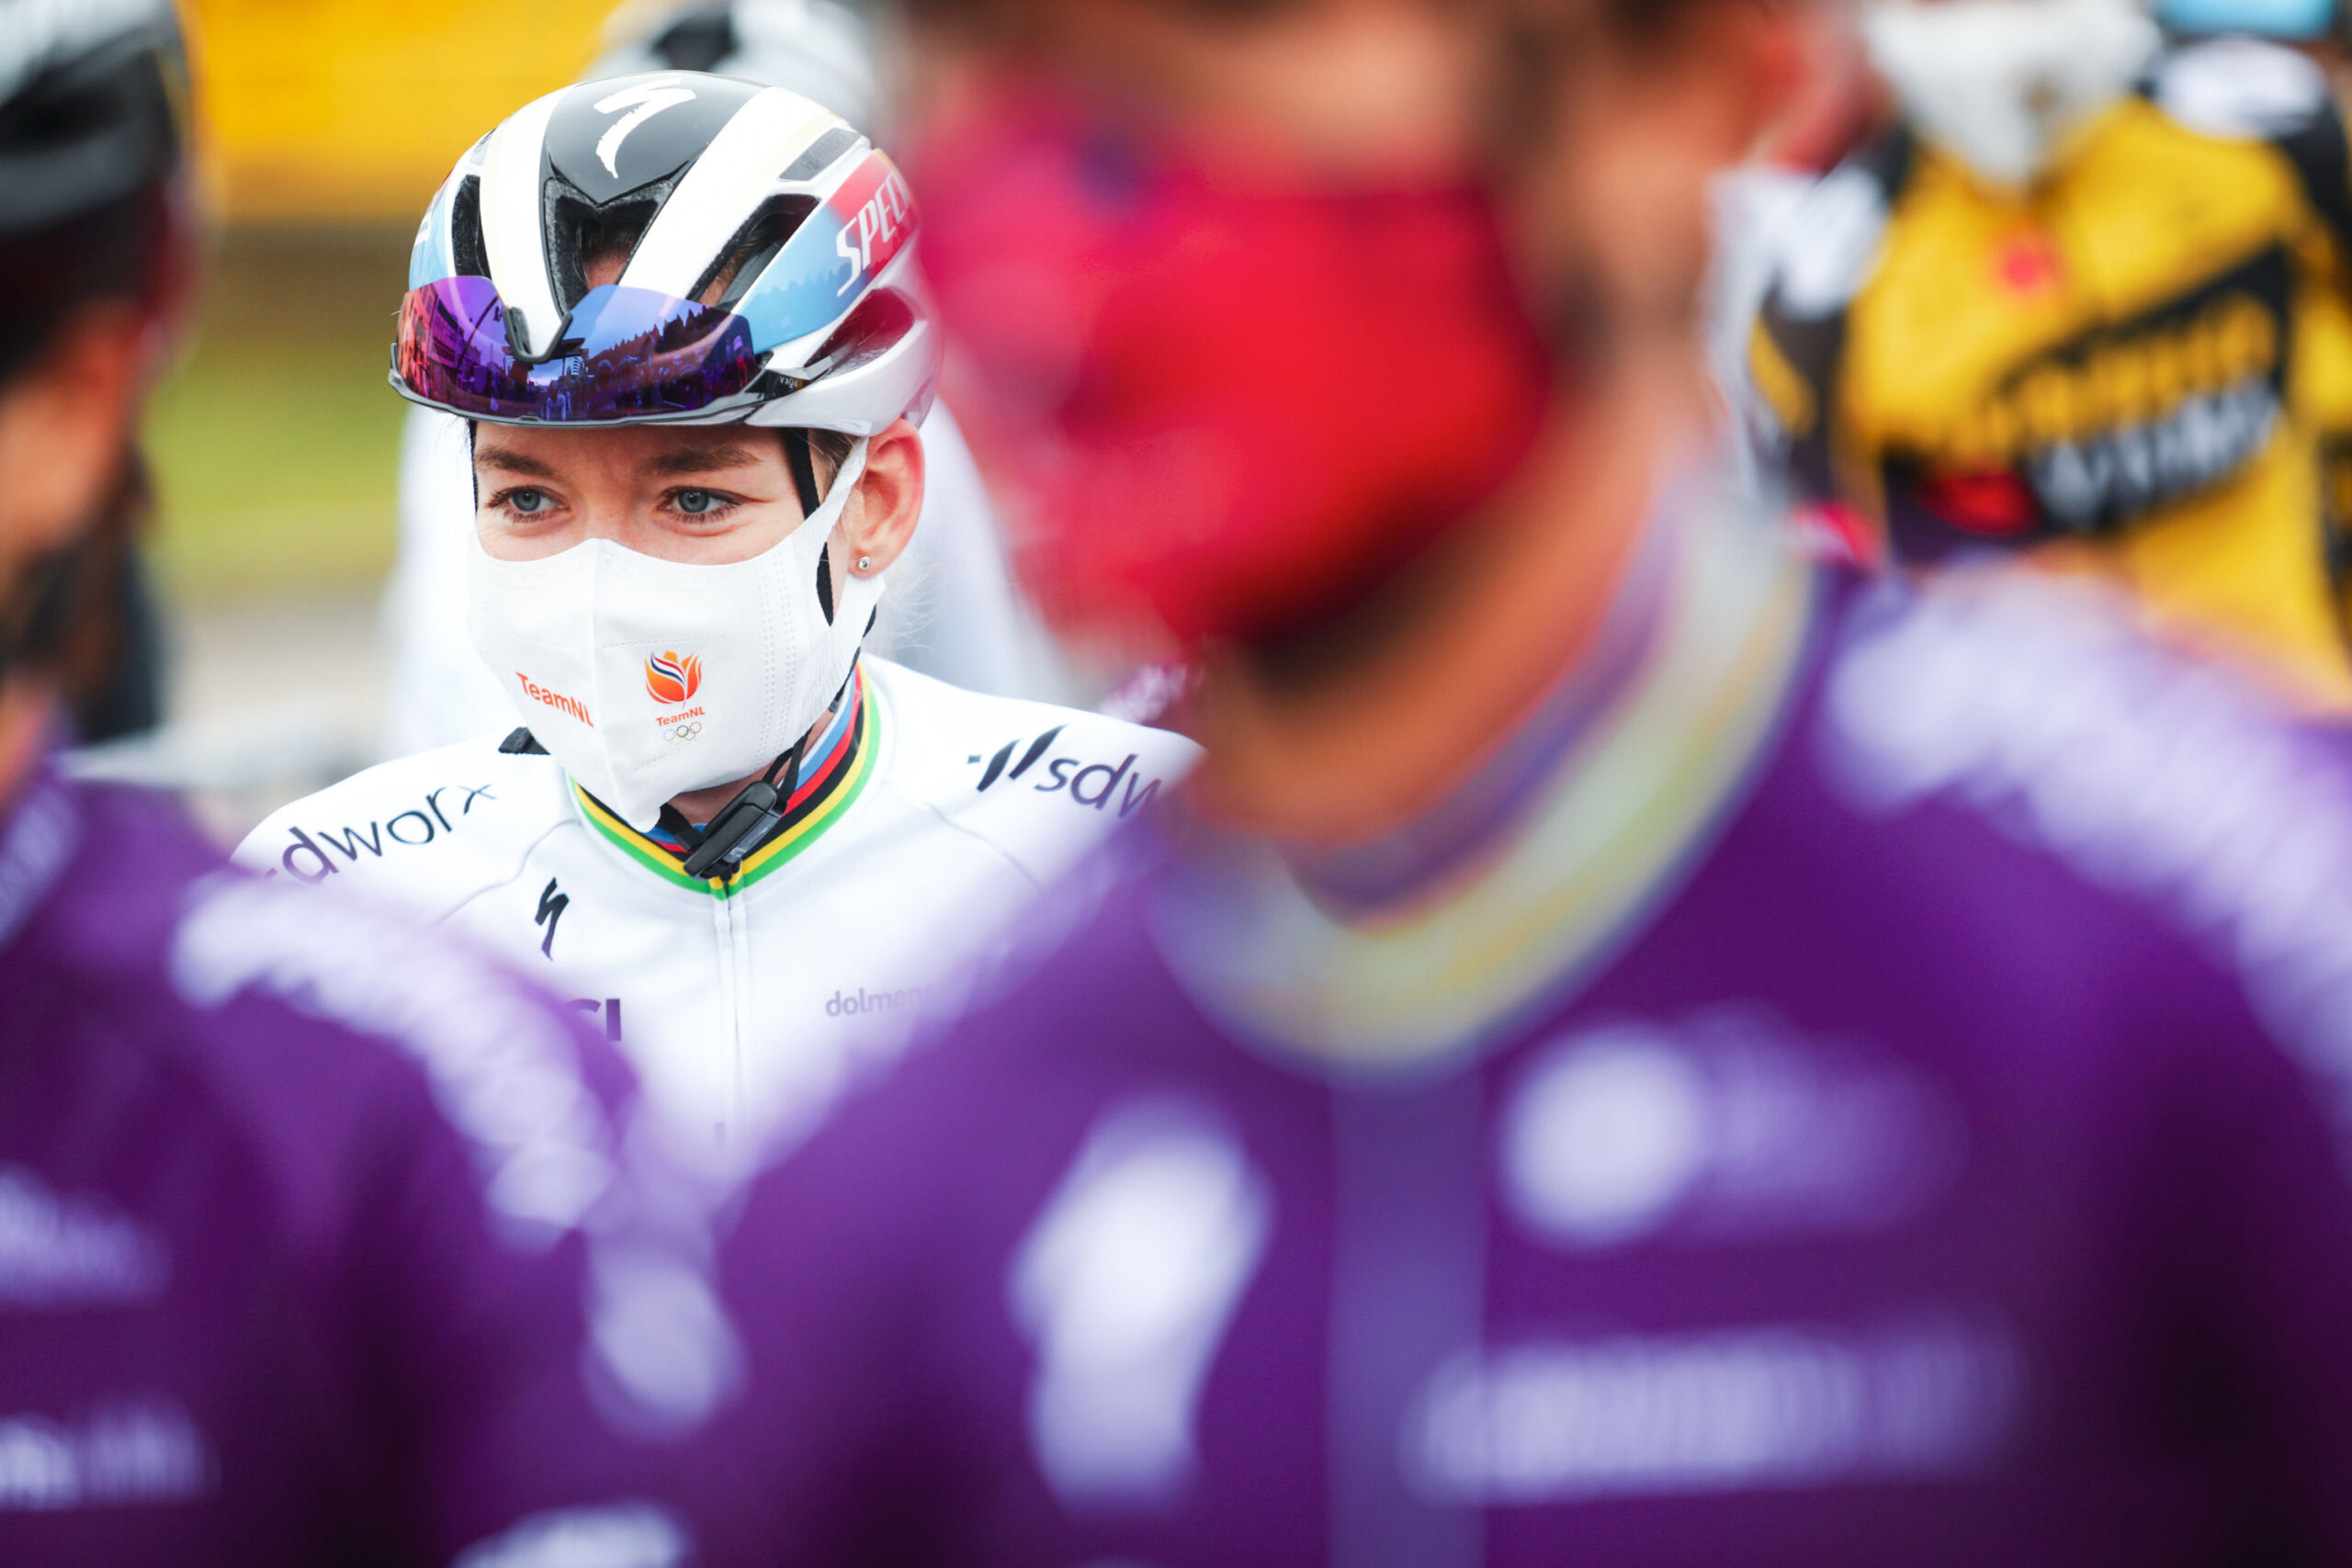 Giro d’Italia Donne 2021: etap 4. Dominacja Anny van der Breggen